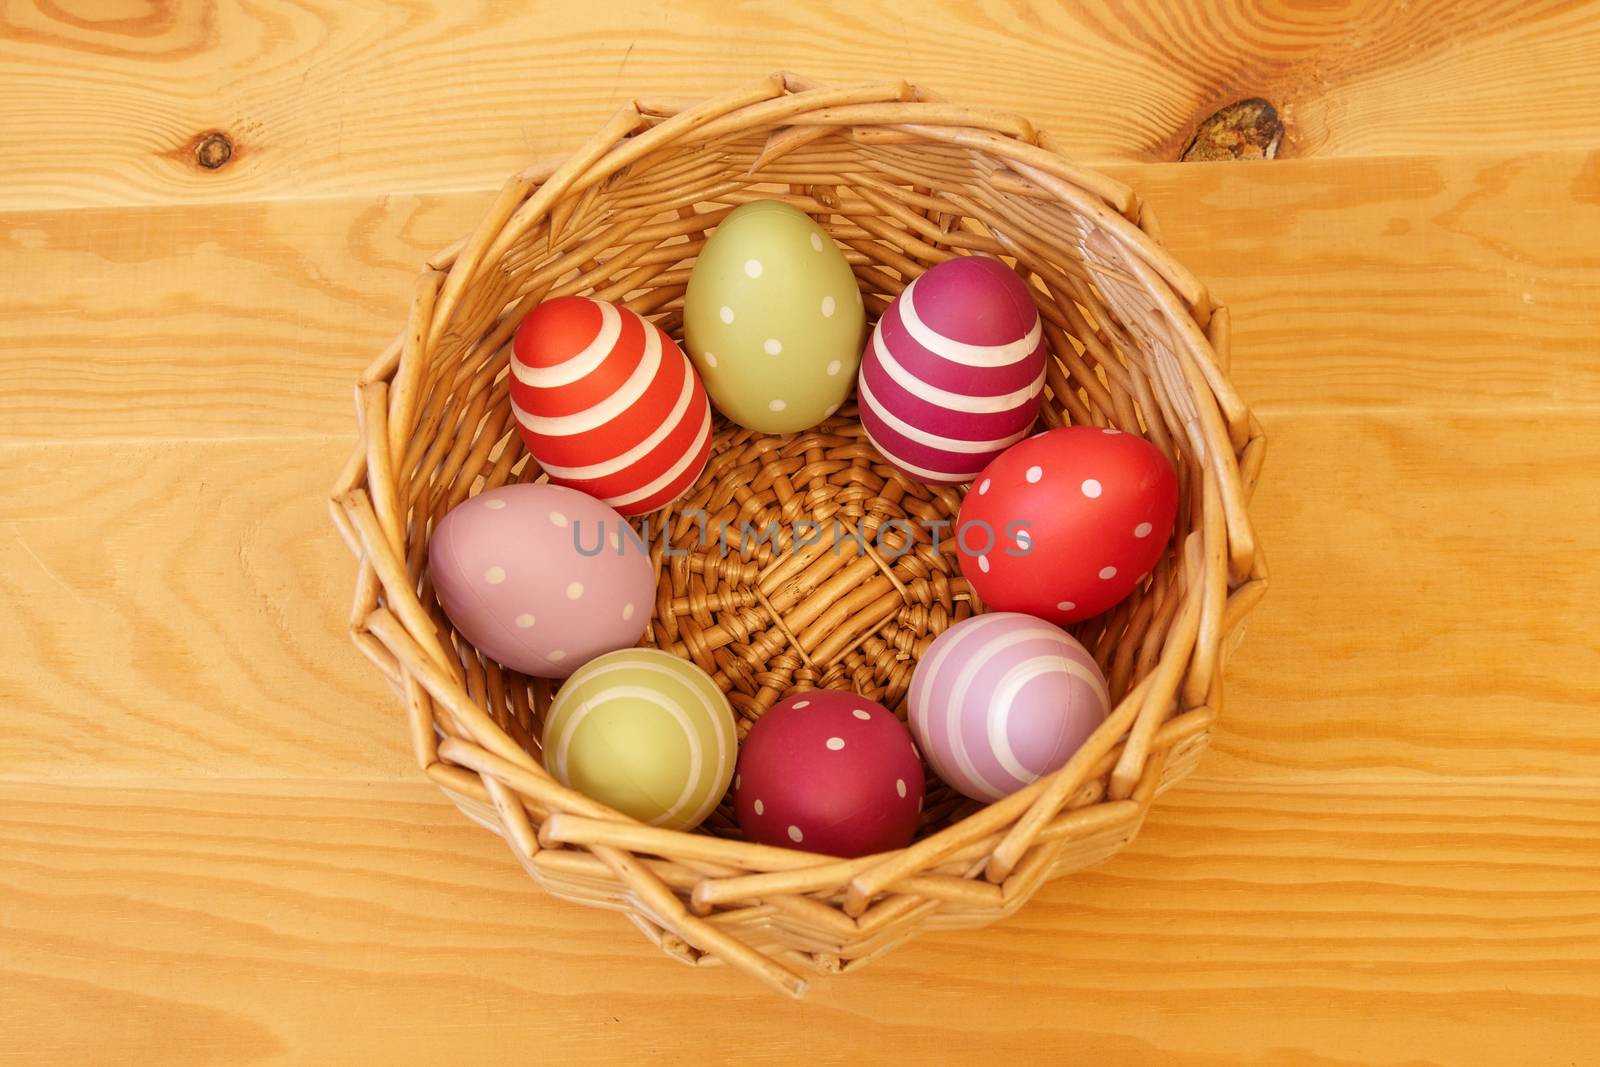 Eggs in Easter Basket by Chemik11